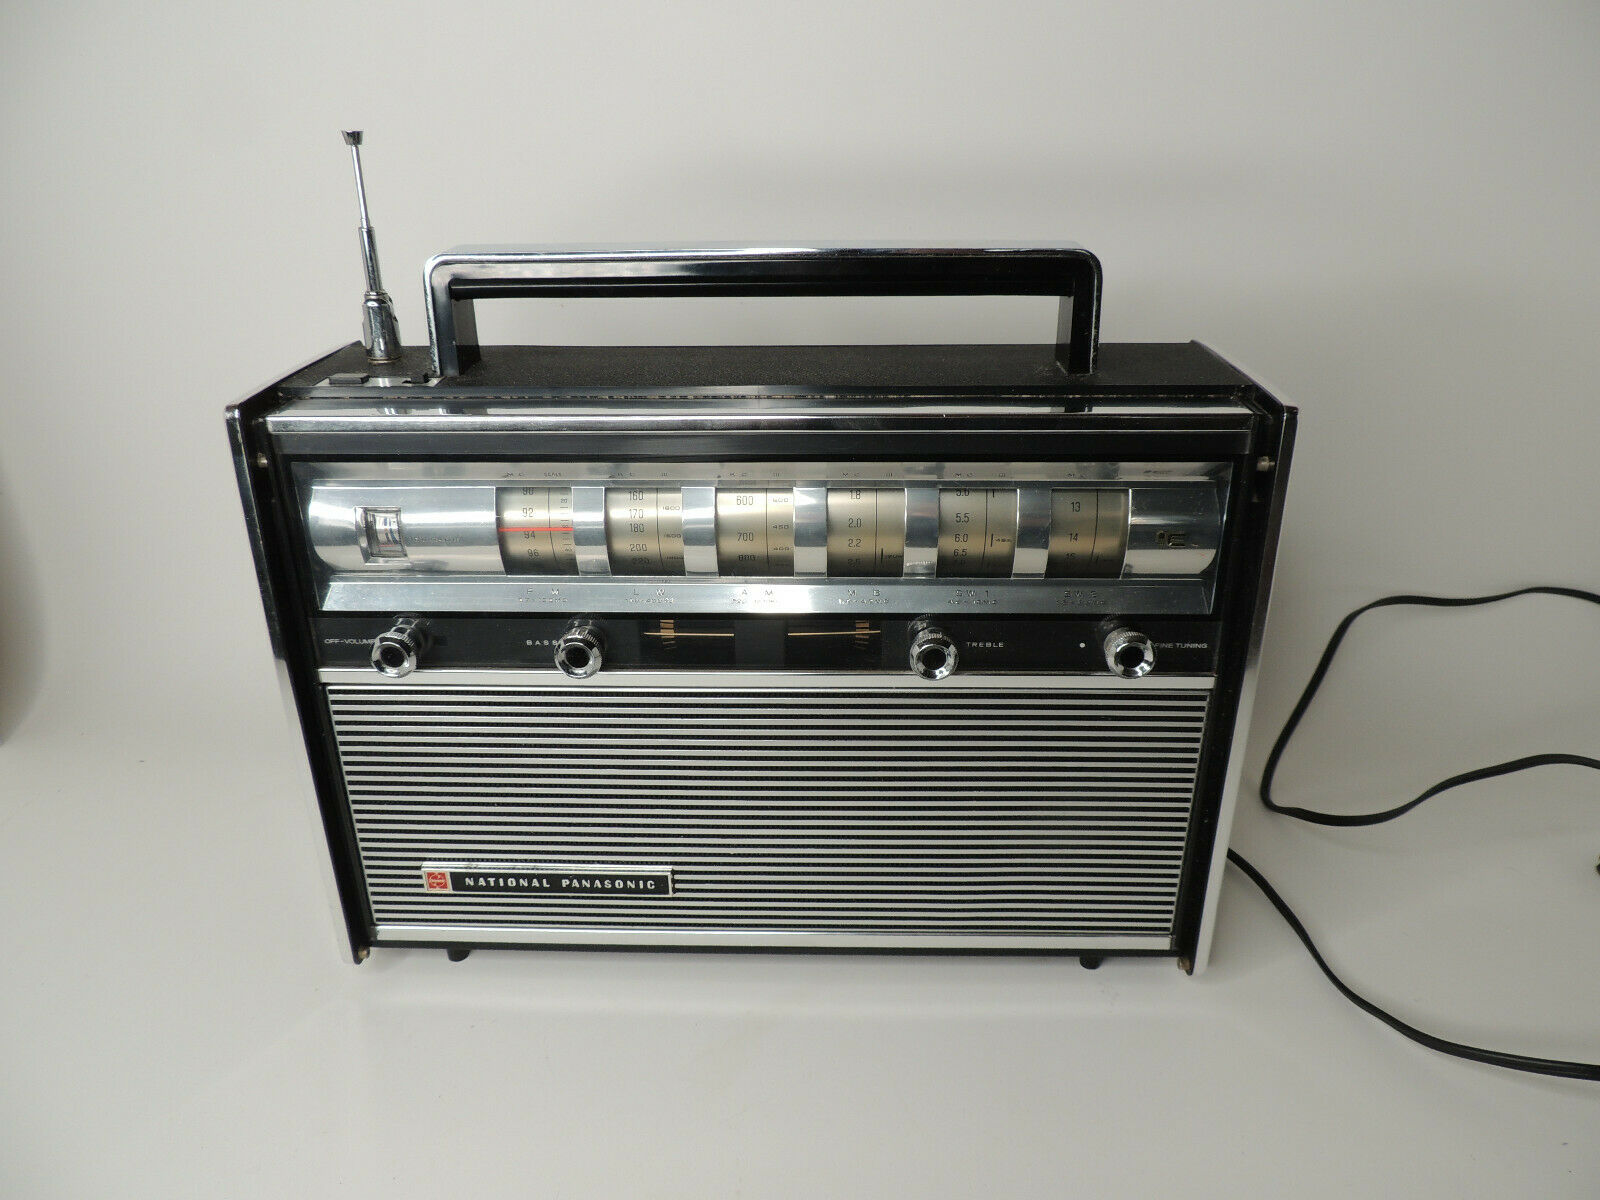 Vintage National Panasonic RF-3000A 6 Band Radio